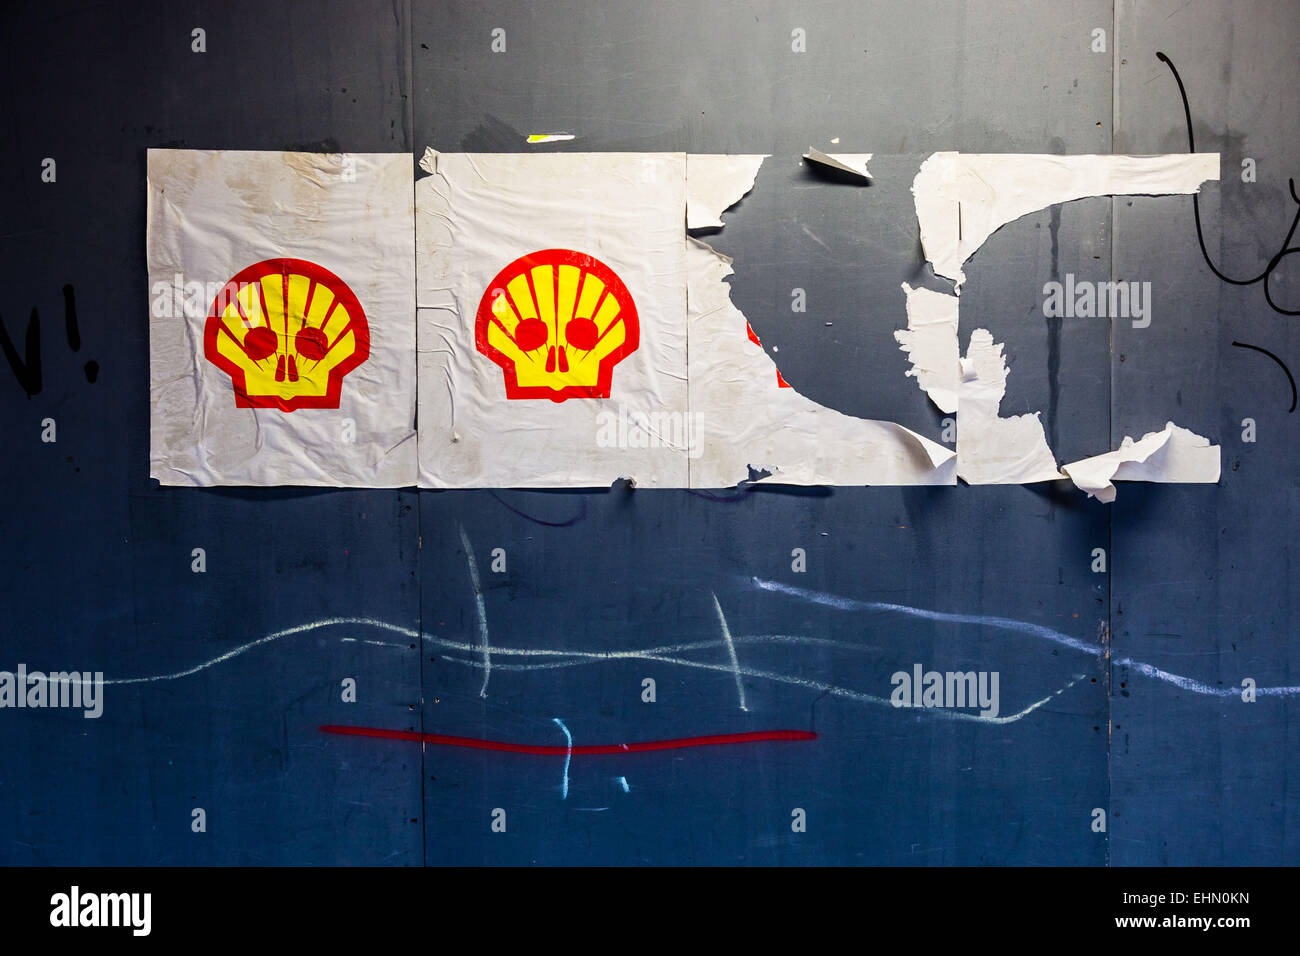 El logotipo de la compañía petrolera Shell secuestrada por activistas ambientales denunciando la responsabilidad de la contaminación de petróleo de Shell. Foto de stock